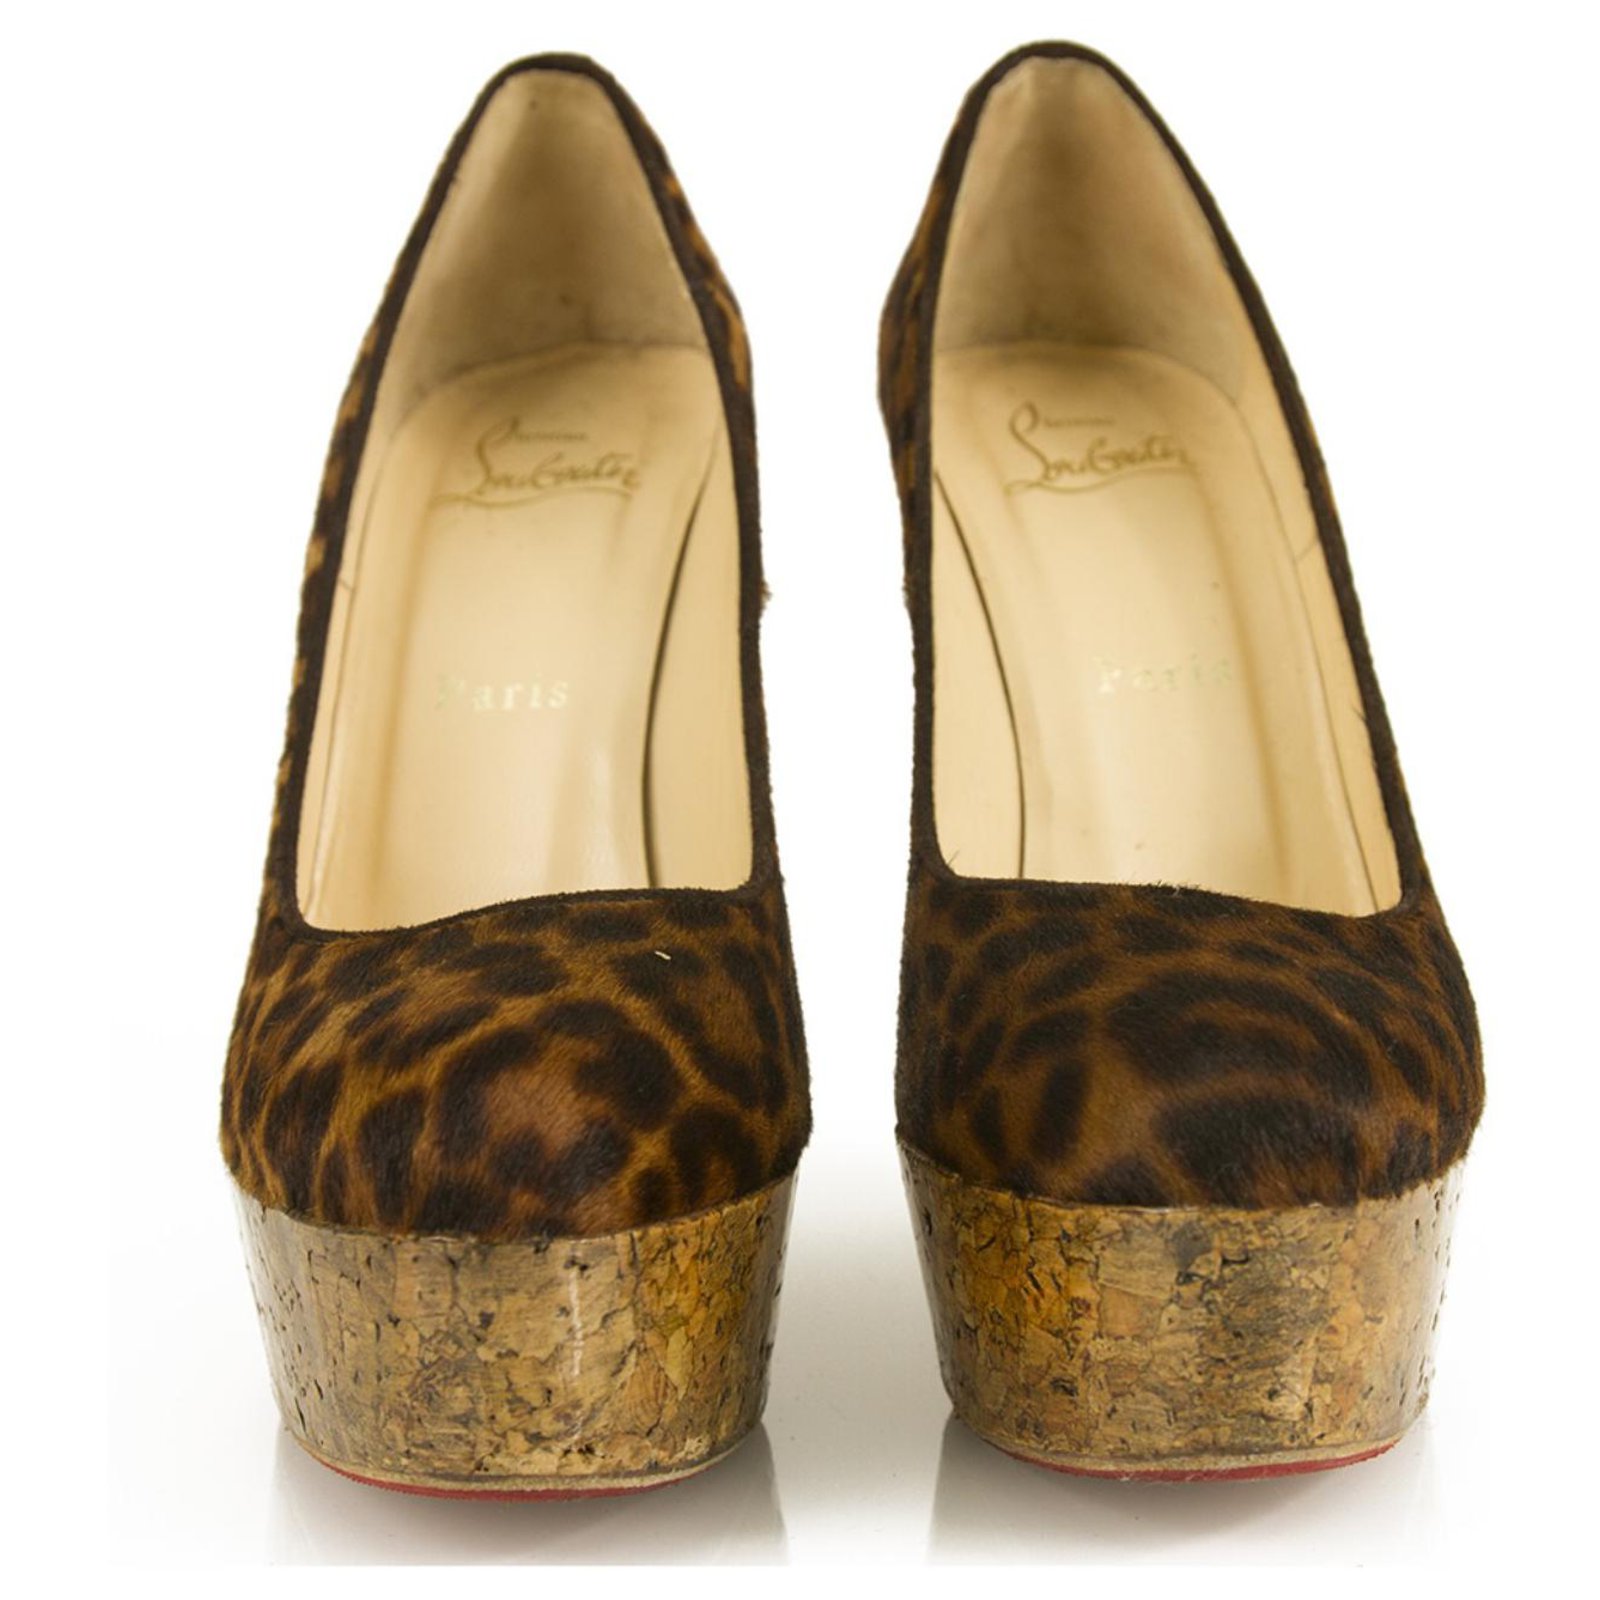 louboutin leopard print heels